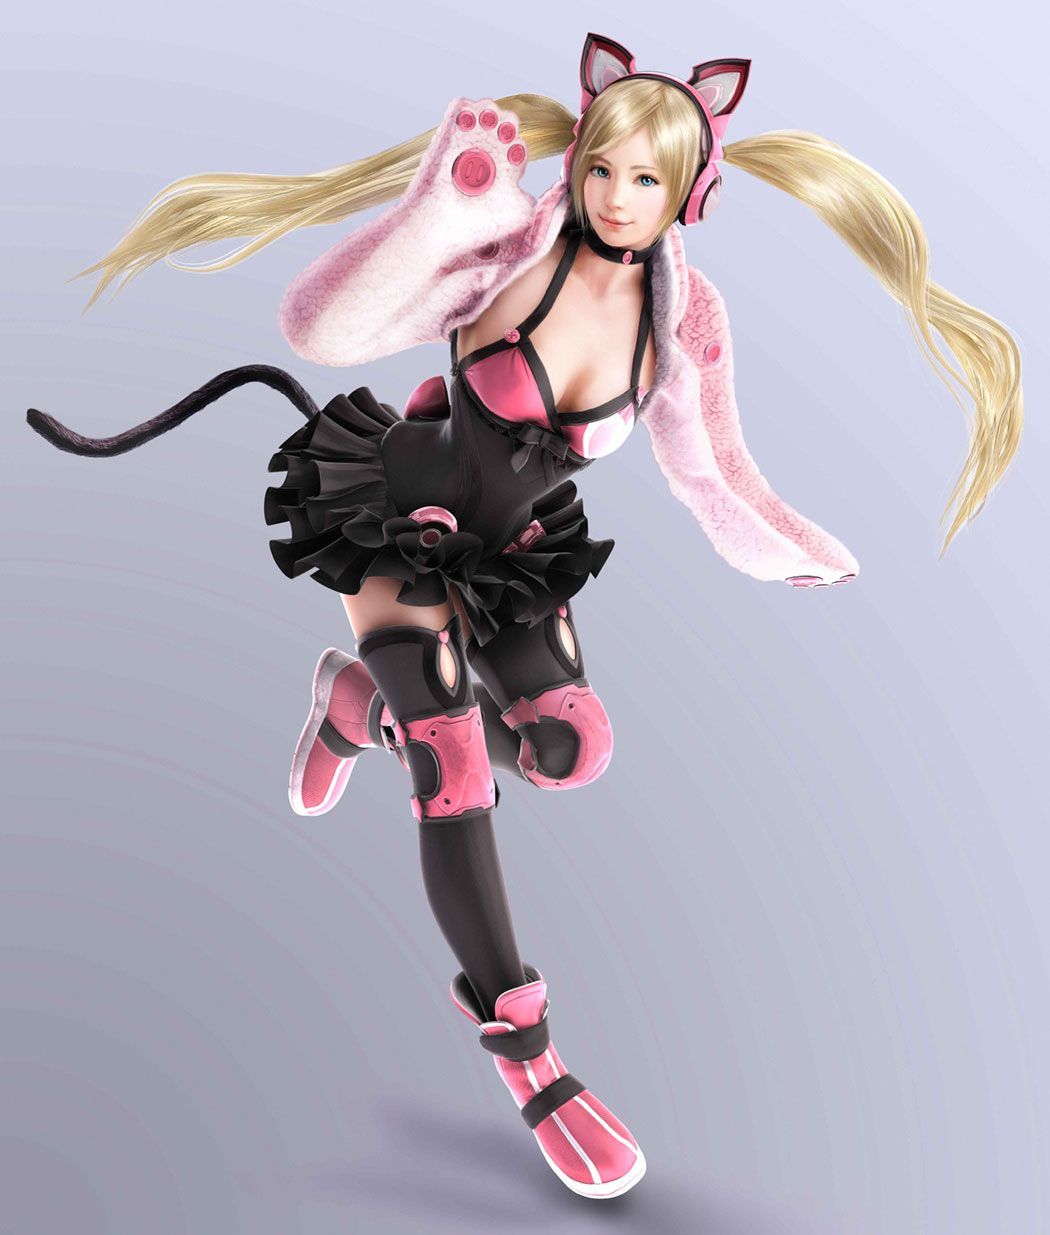 Lucky Chloe character artwork from Tekken 7: Fated Retribution #art #illustration #artwork #gaming #videogames #gamer. Tekken Girls characters, Cat girl